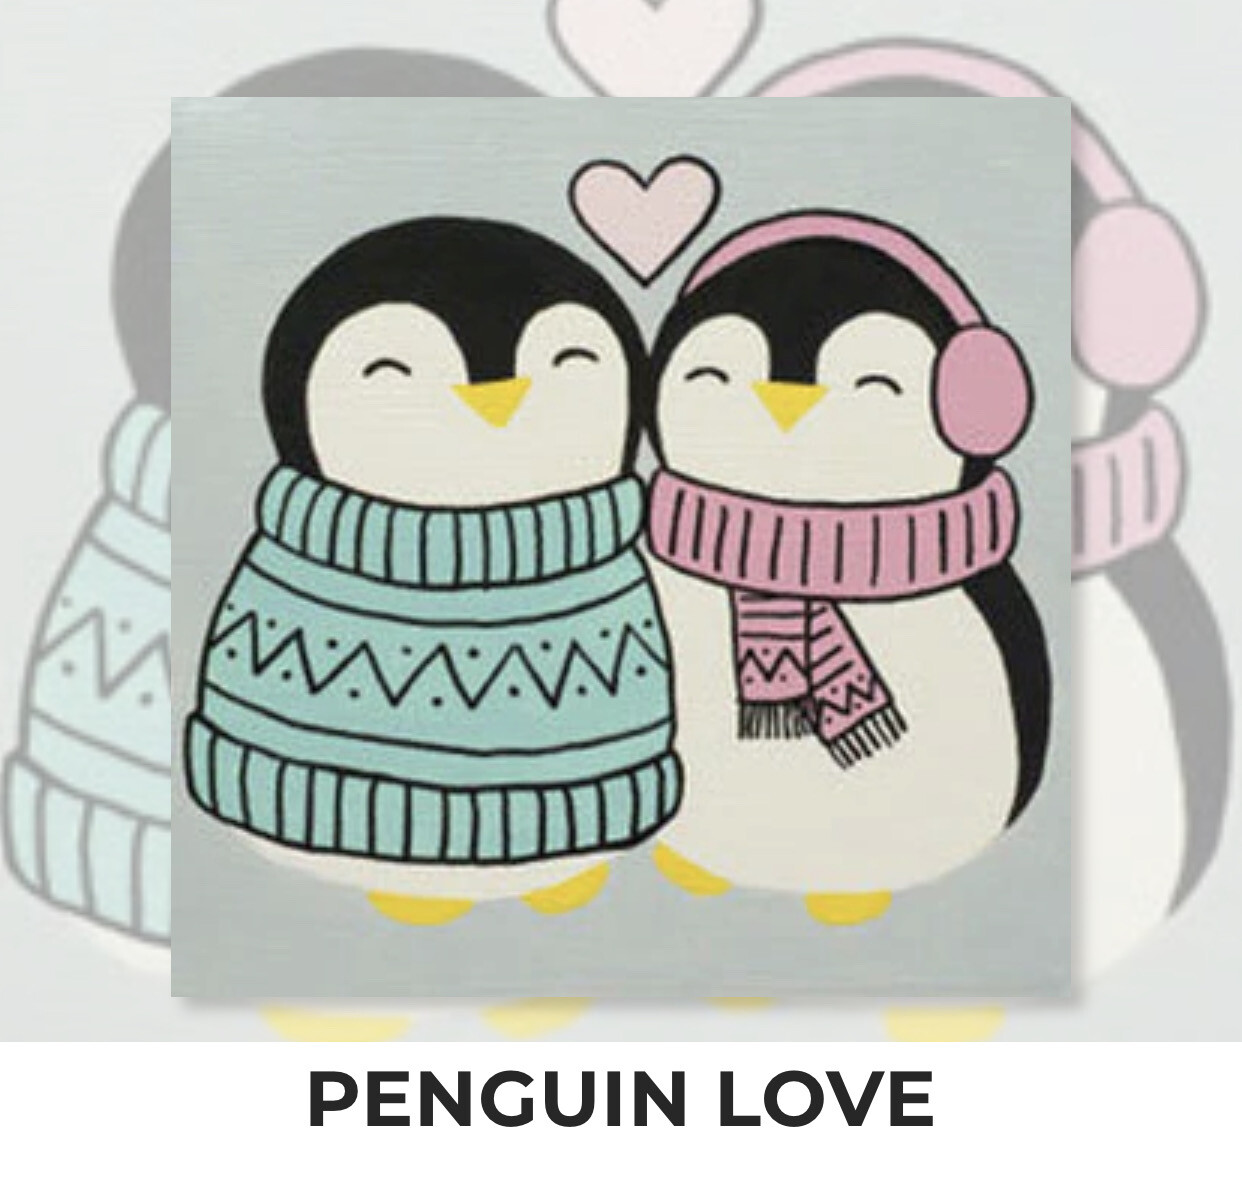 Penguin Love KIDS Acrylic Paint On Canvas DIY Art Kit